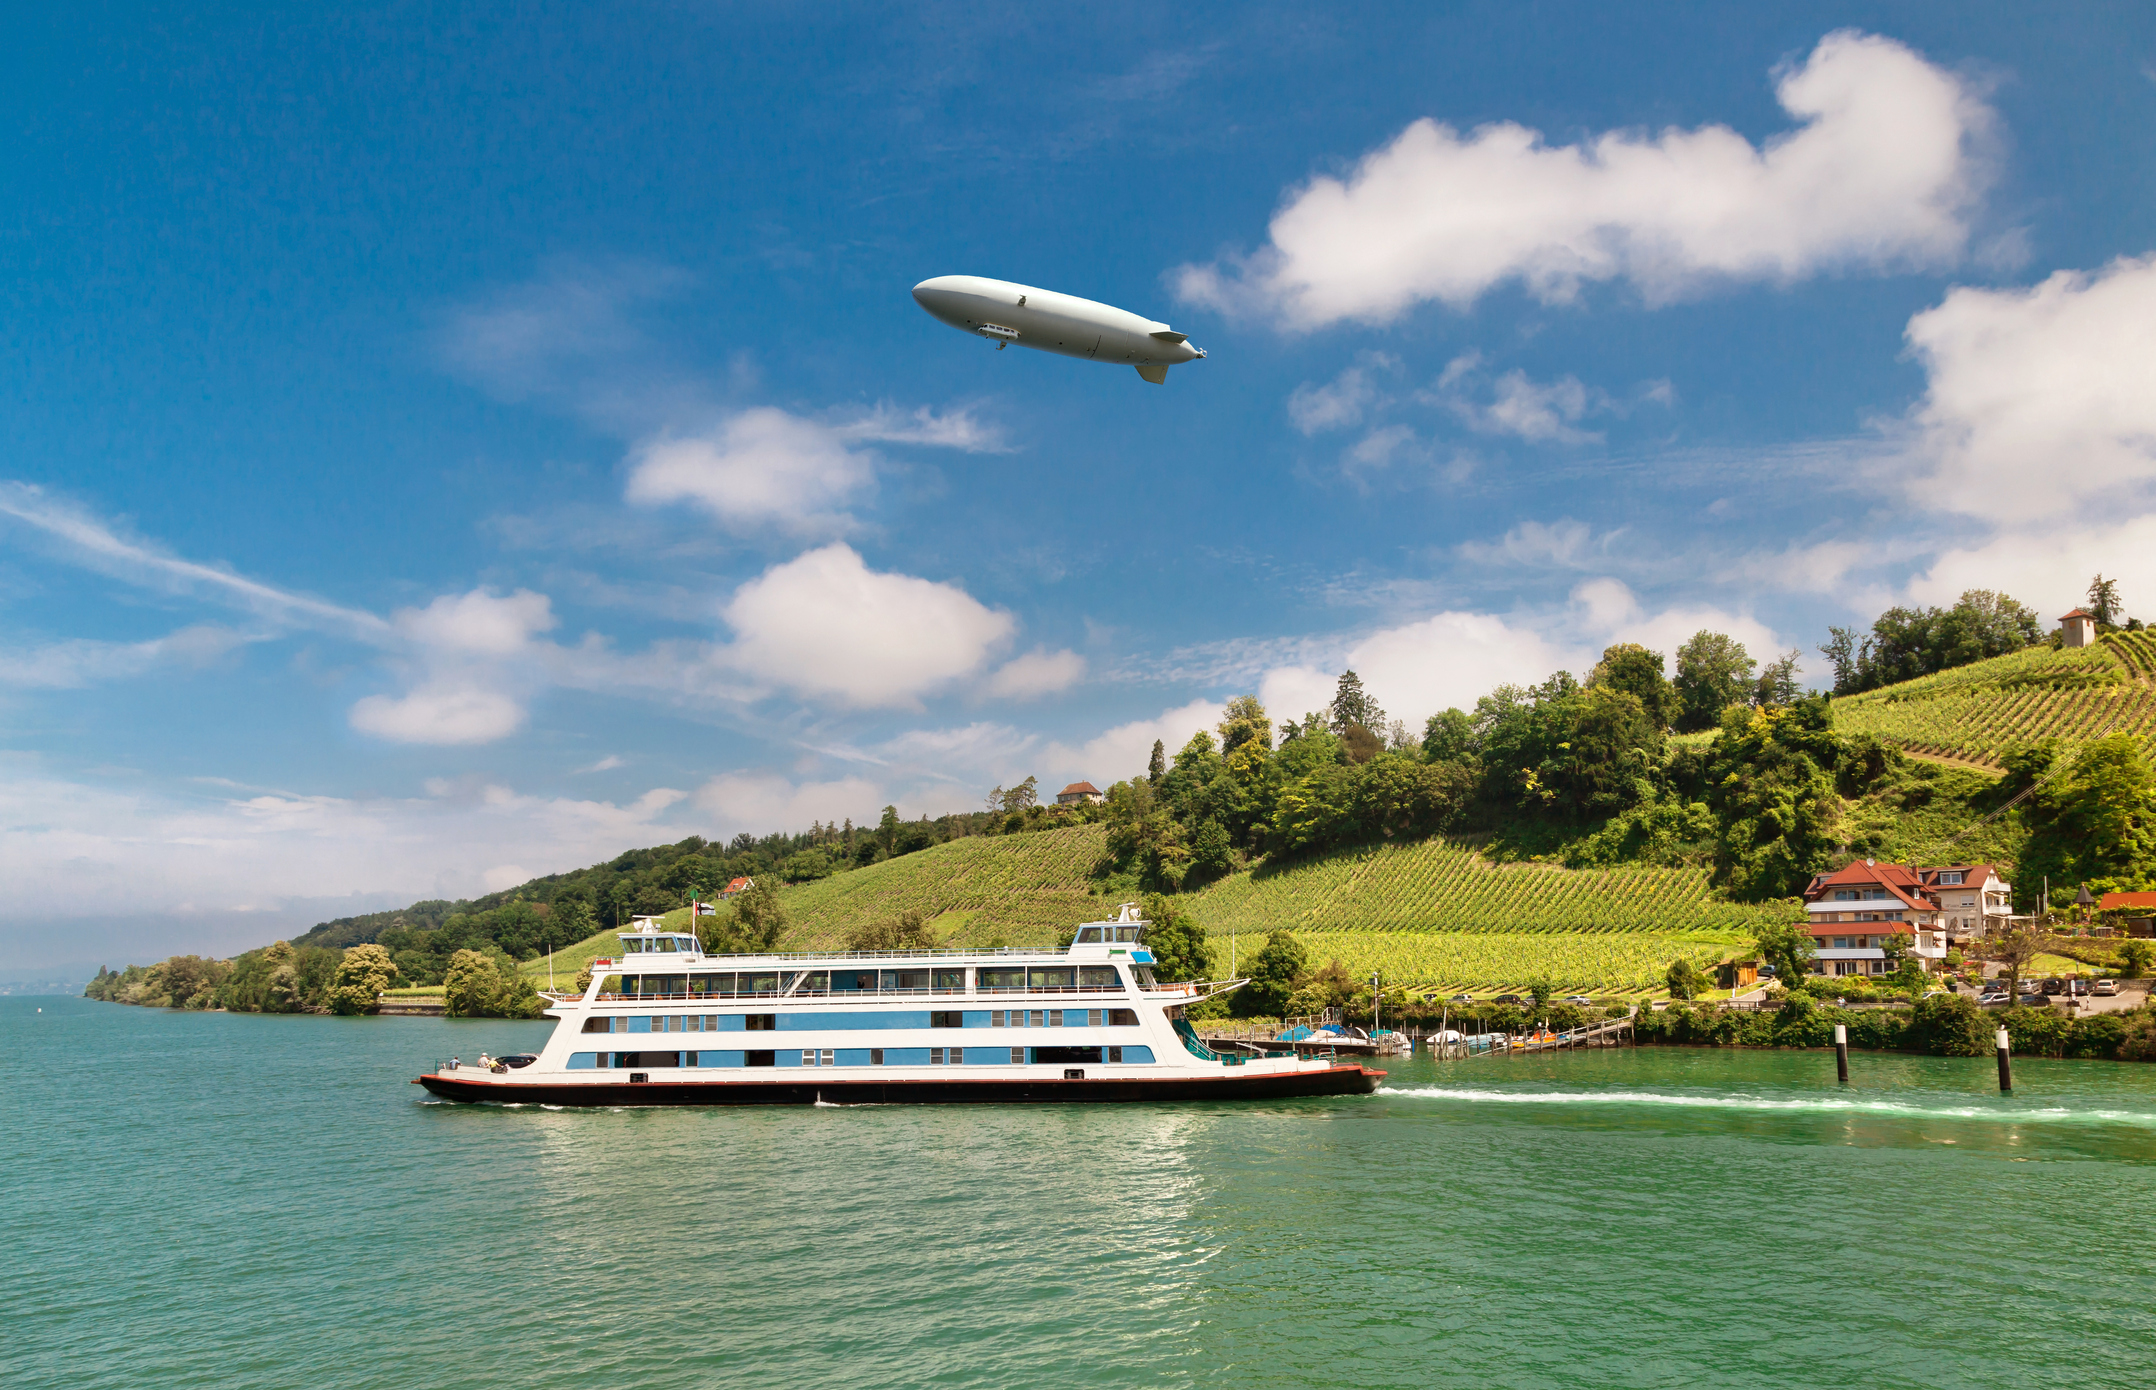 Een Zeppelin zweeft boven een rivierlandschap met wijngaarden en een veerboot.